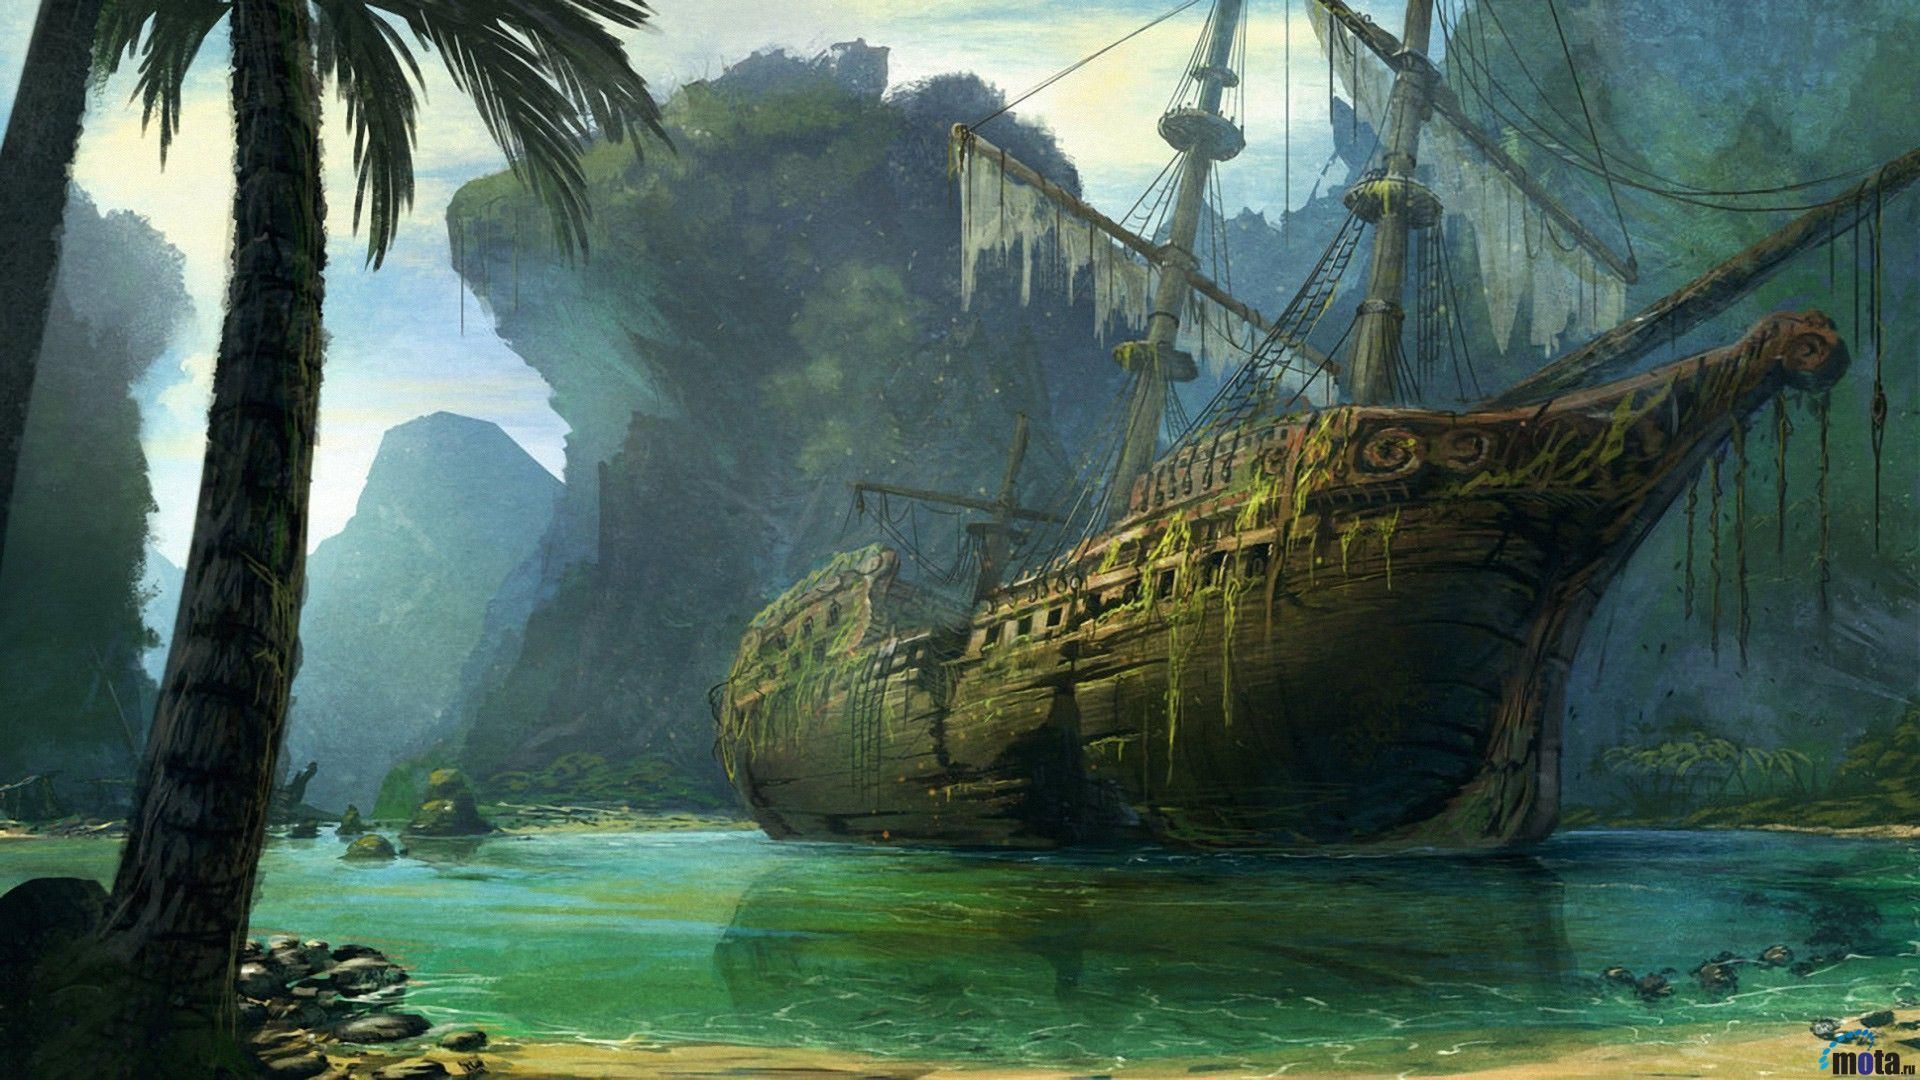 Download Pirate Ship Wallpaper Widescreen tgz > Mbuh.xyz